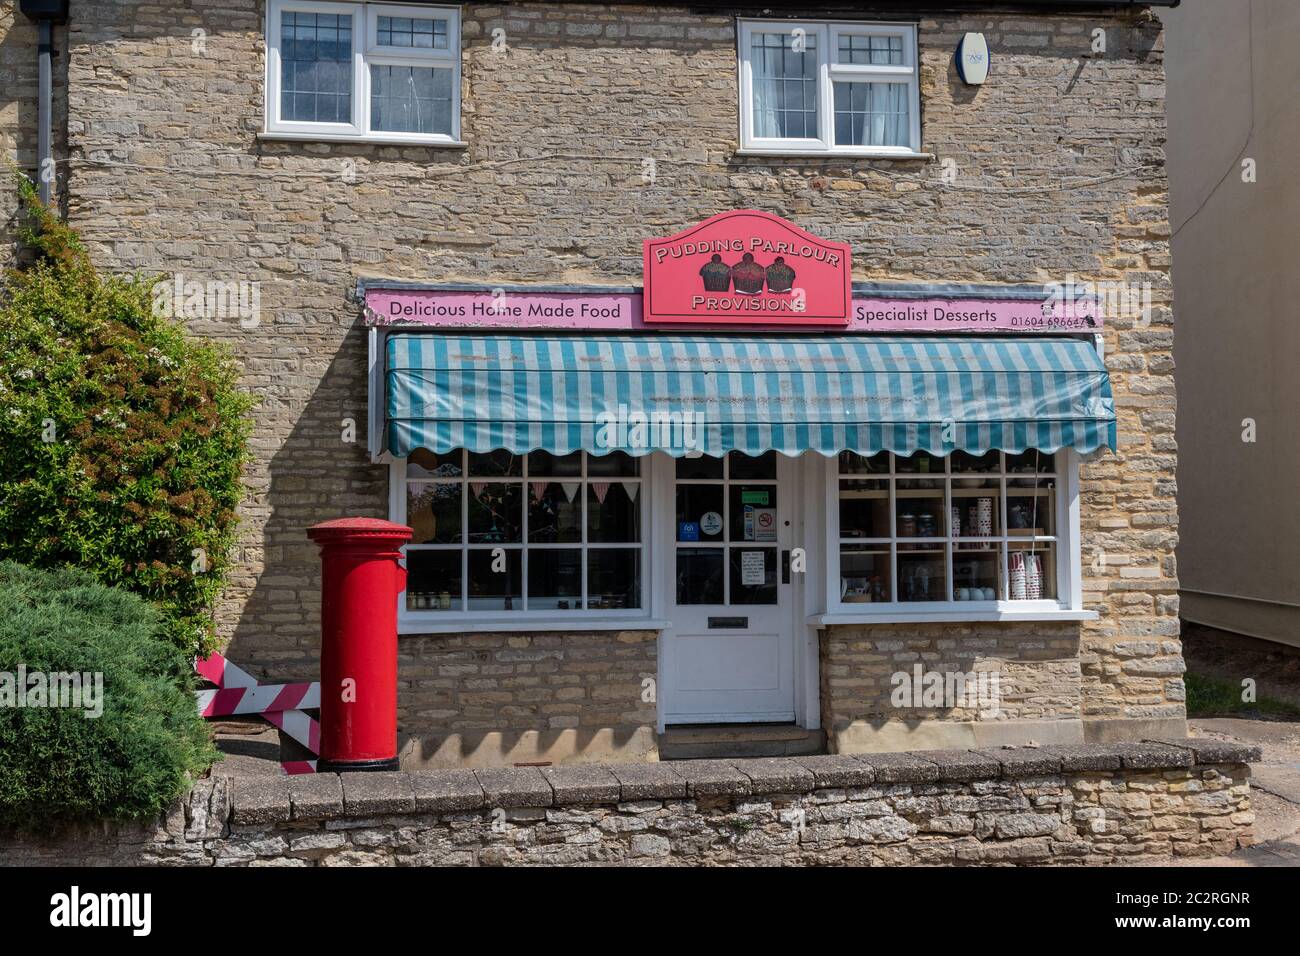 Le Pudding Parlor une boutique du village de Yardley Hastings, Northamptonshire, Royaume-Uni; spécialisé dans les desserts faits maison. Banque D'Images